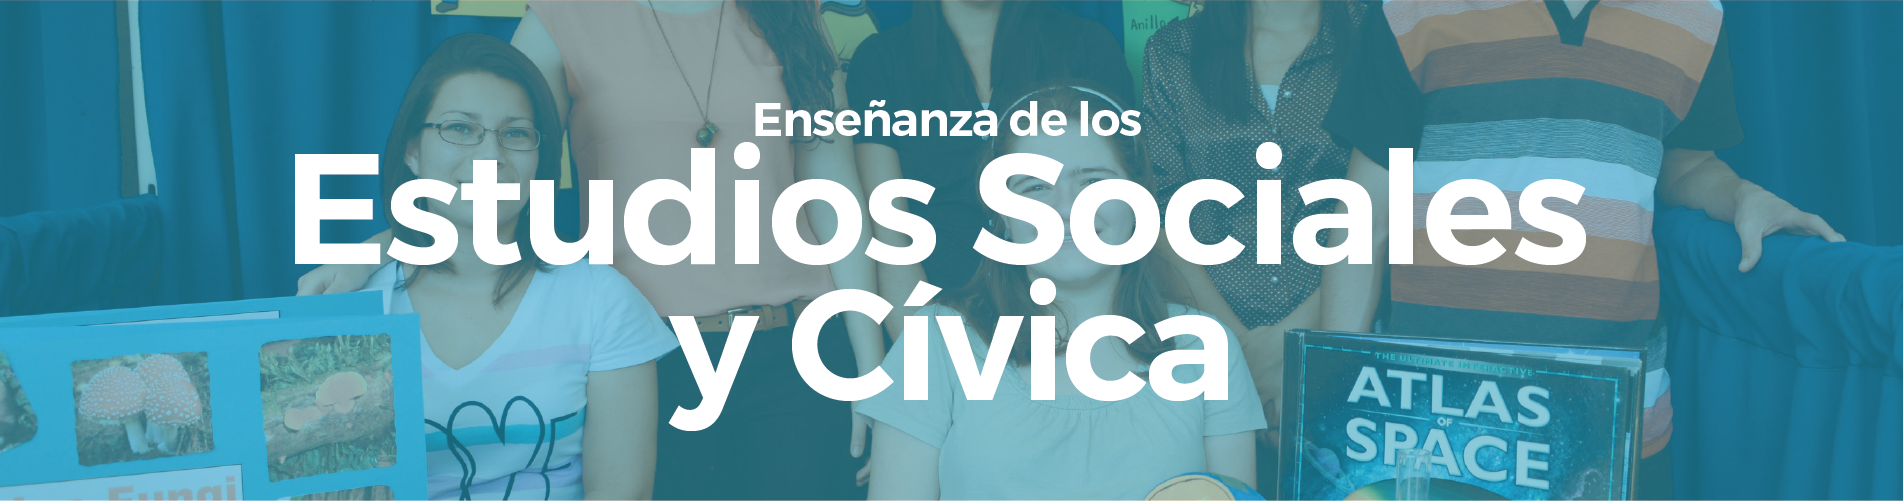 Enseñanza de los Estudios Sociales y Cívica (Occidente)